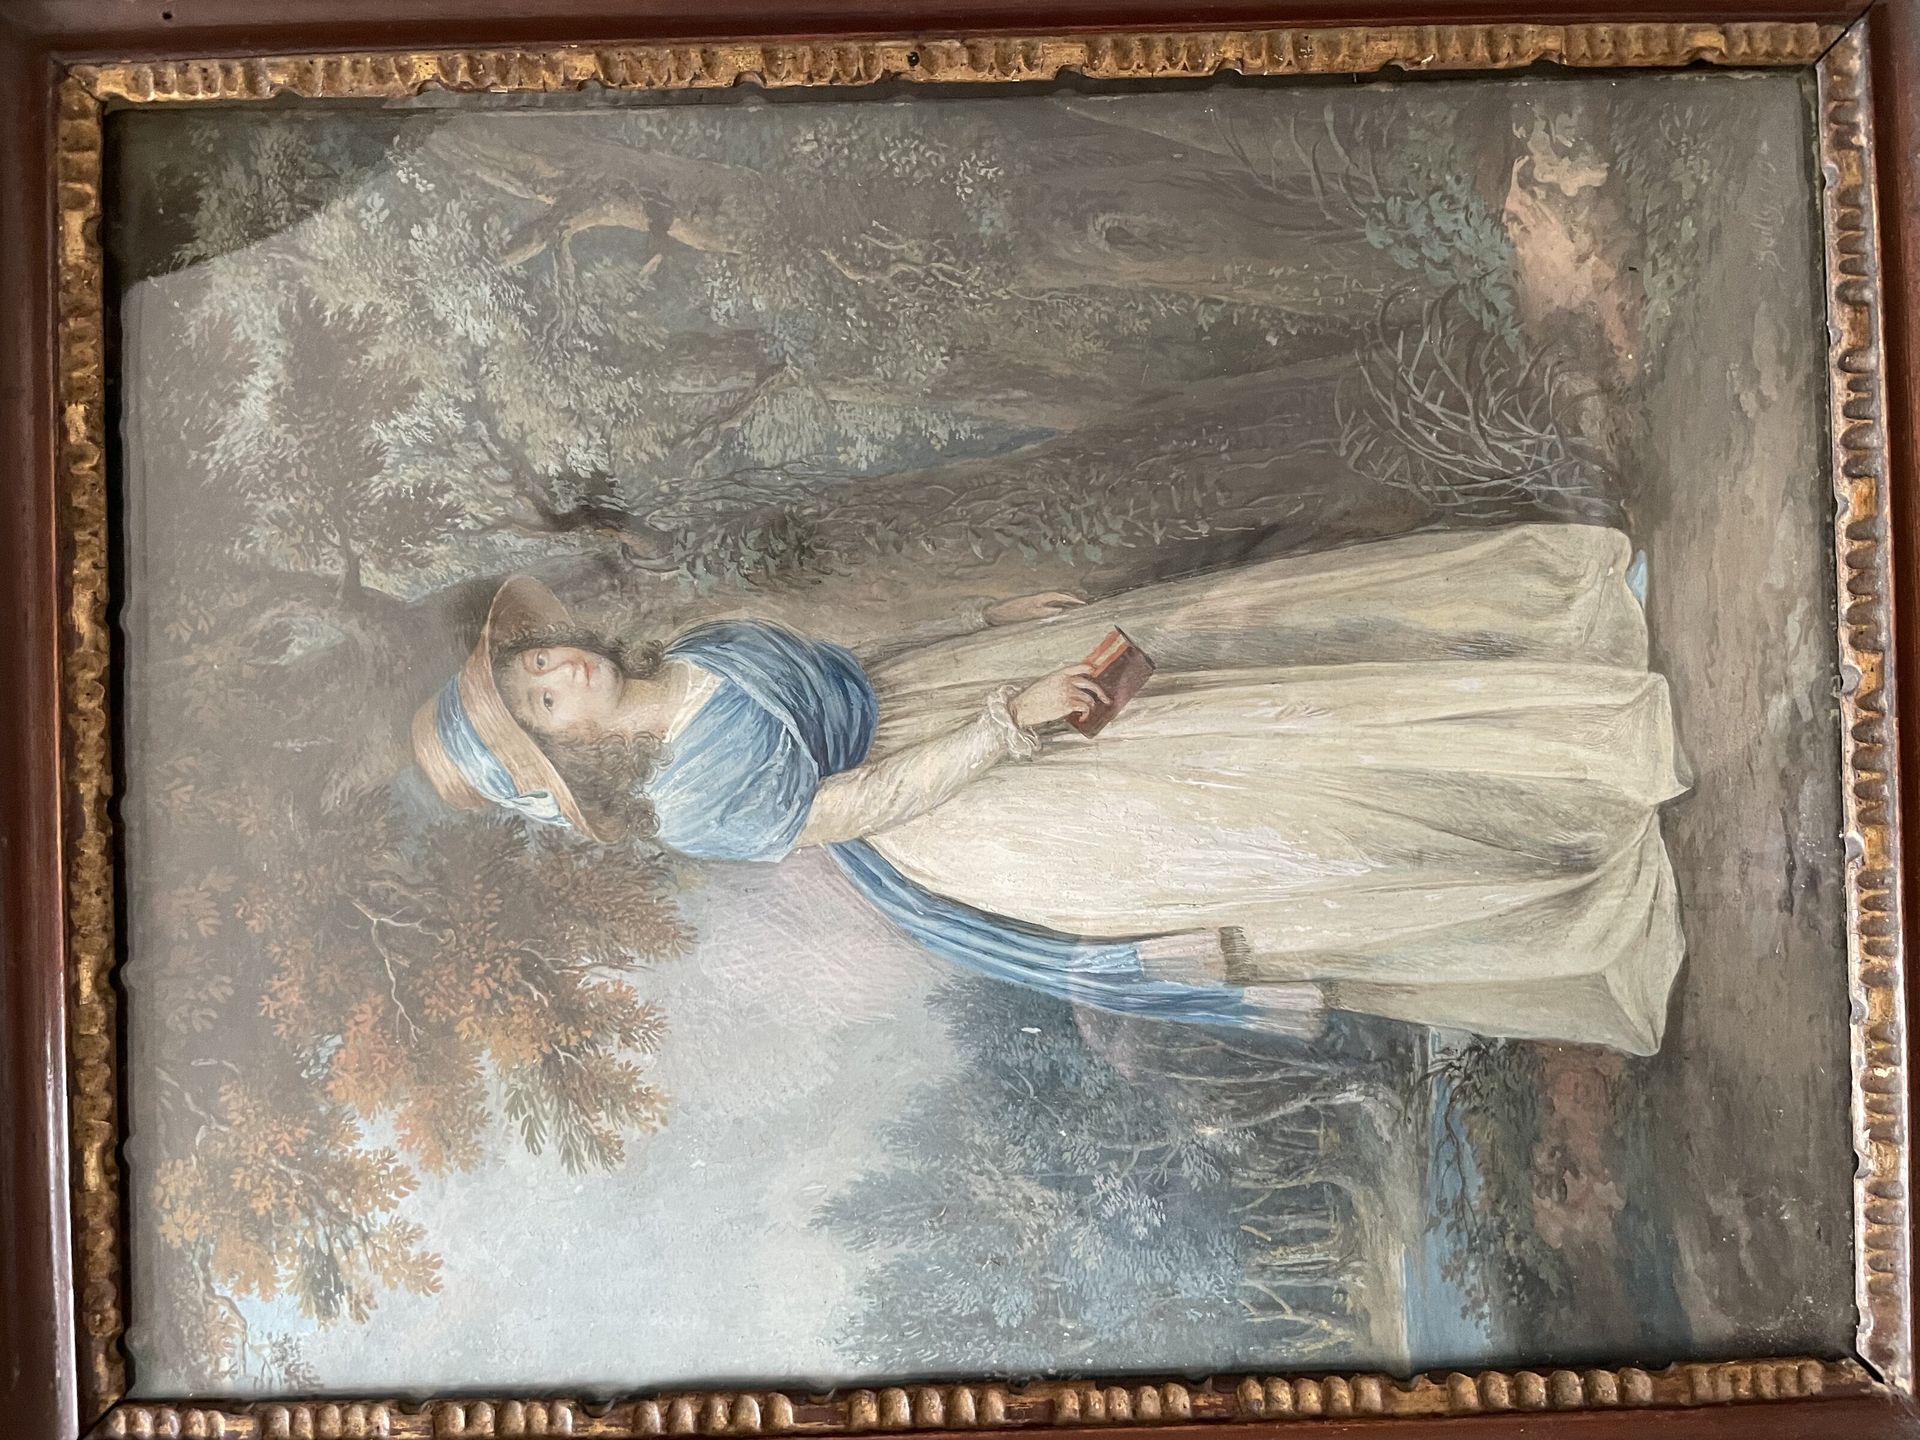 Dans le goût de Louis-Léopold BOILLY 公园里的女人肖像
水粉画
带有博伊的签名 1794
31x24 cm.